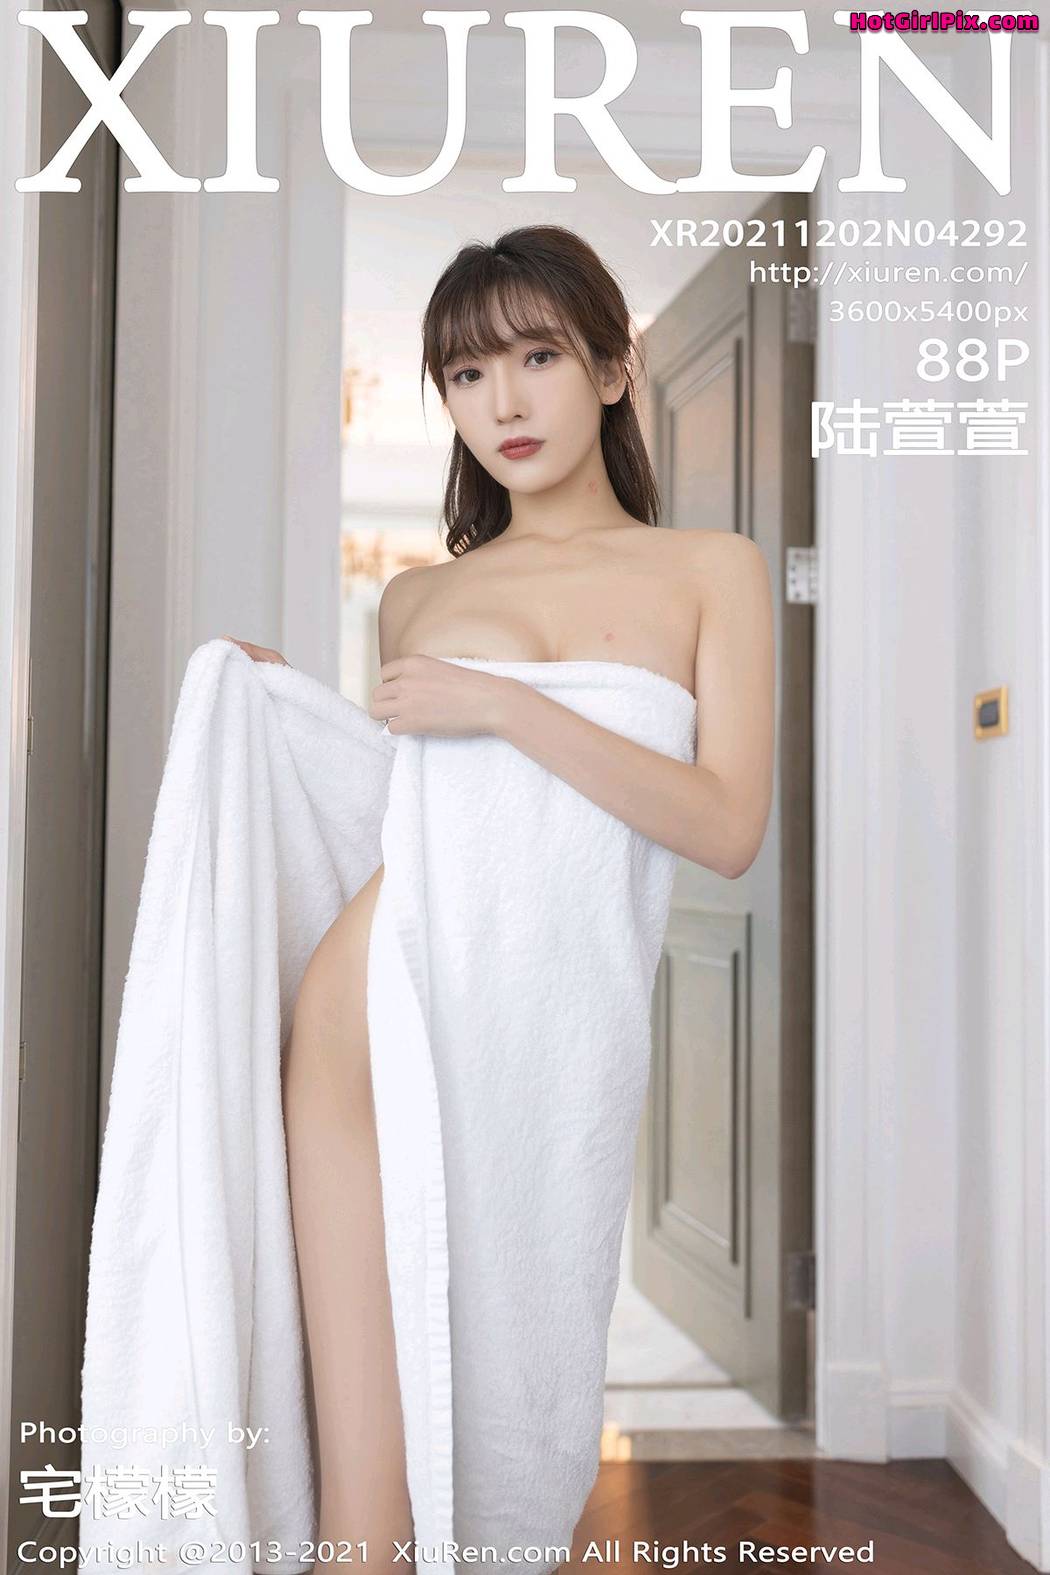 [XIUREN] No.4292 Lu Xuan Xuan 陆萱萱 Cover Photo